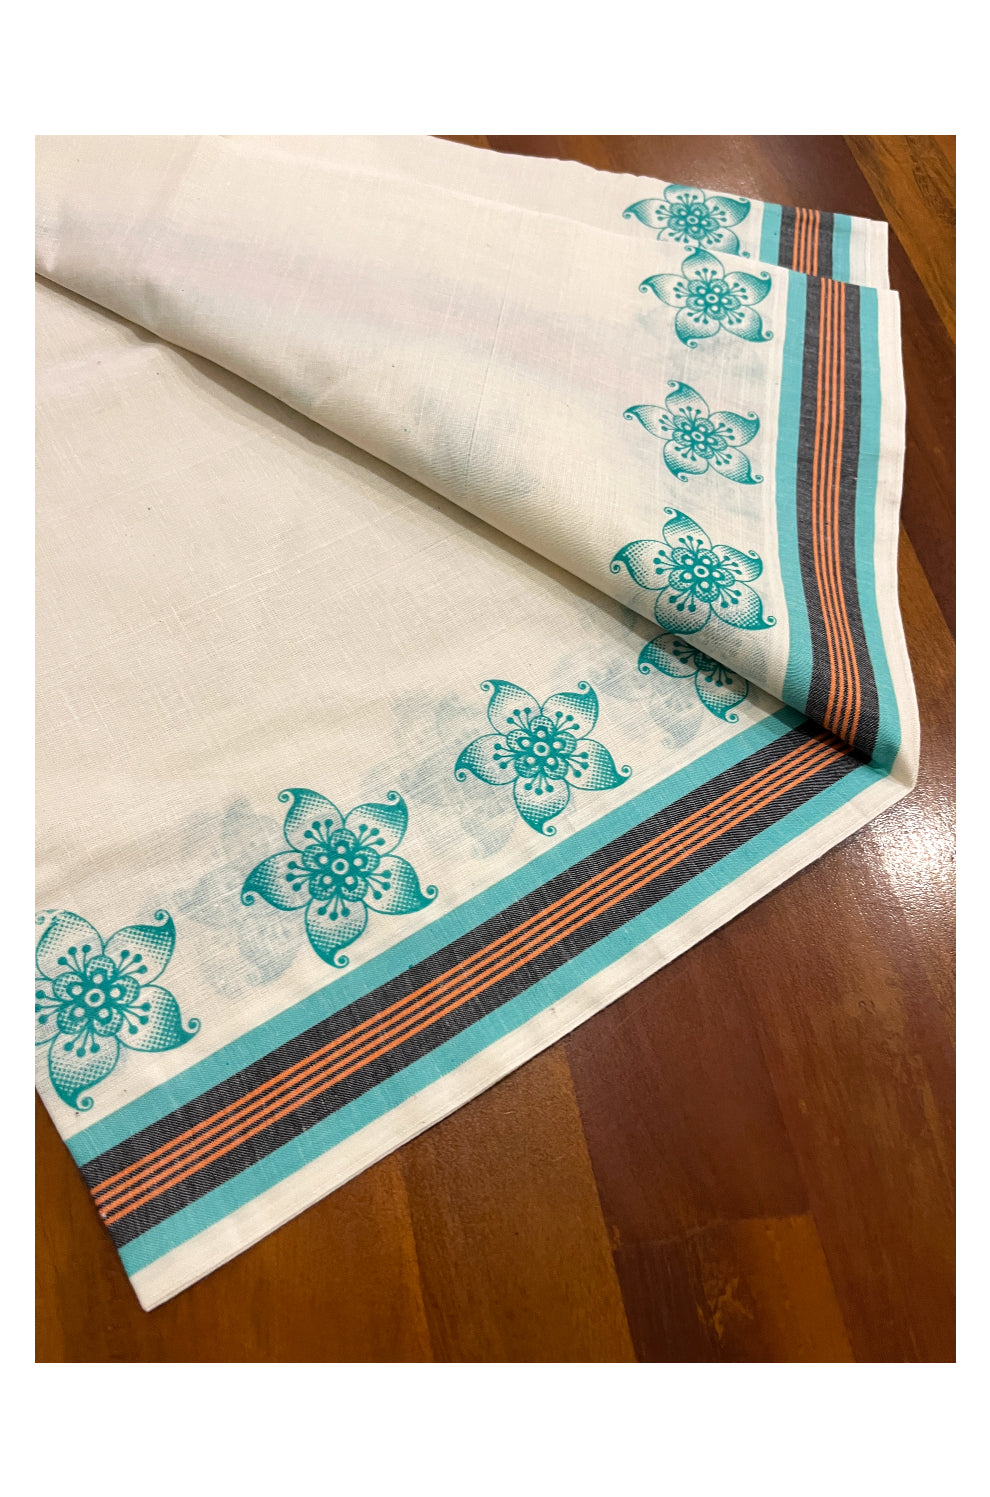 Kerala Cotton Mulloth Mundum Neriyathum Single (Set Mundu) with Turquoise Block Prints on Border (Extra Soft Cotton)